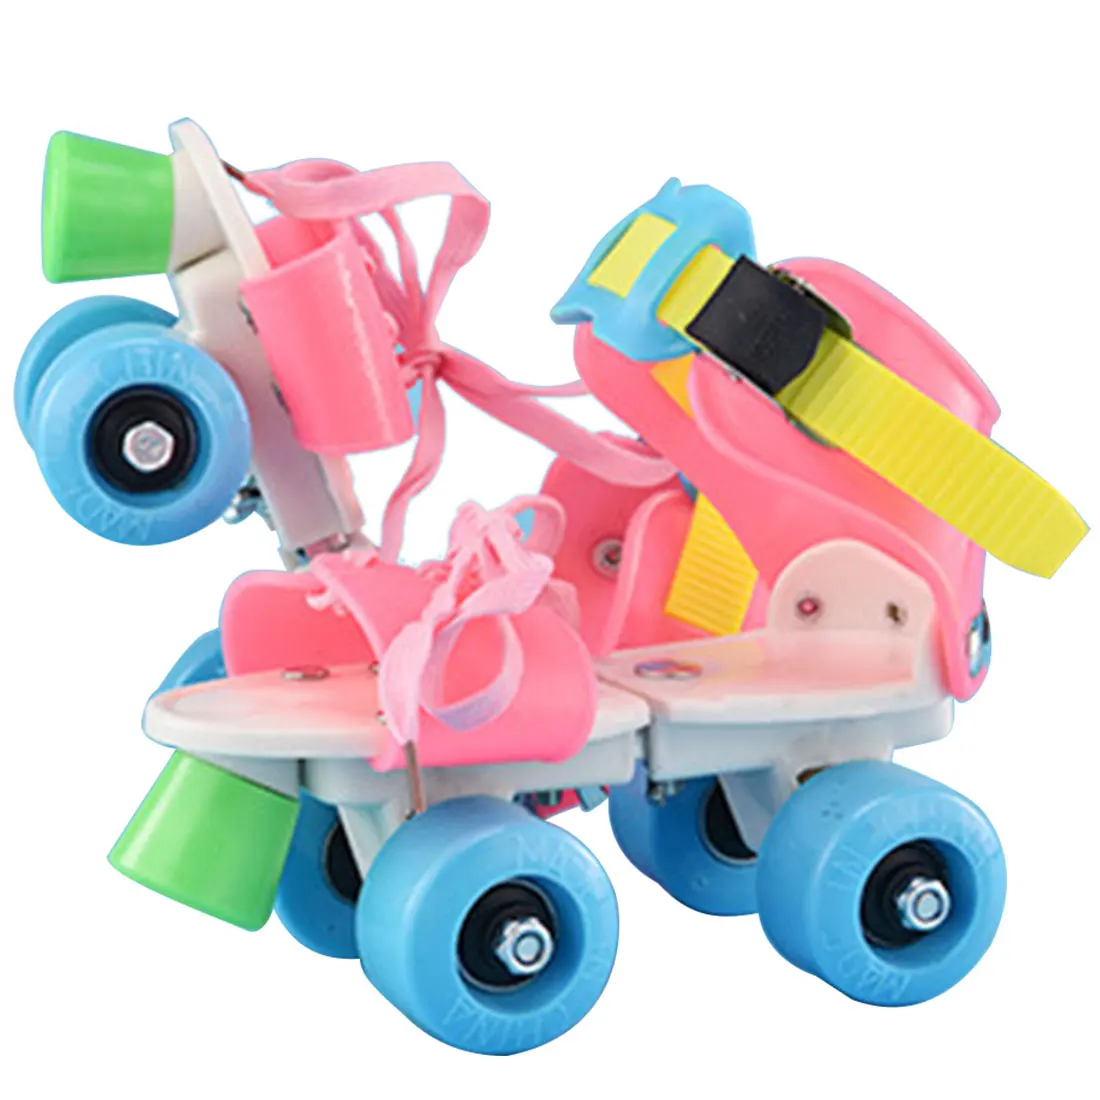 Совершенно новые детские роликовые коньки двухрядные 4 колеса регулируемый размер катания обувь раздвижные Инлайн ролики для слалома детские подарки